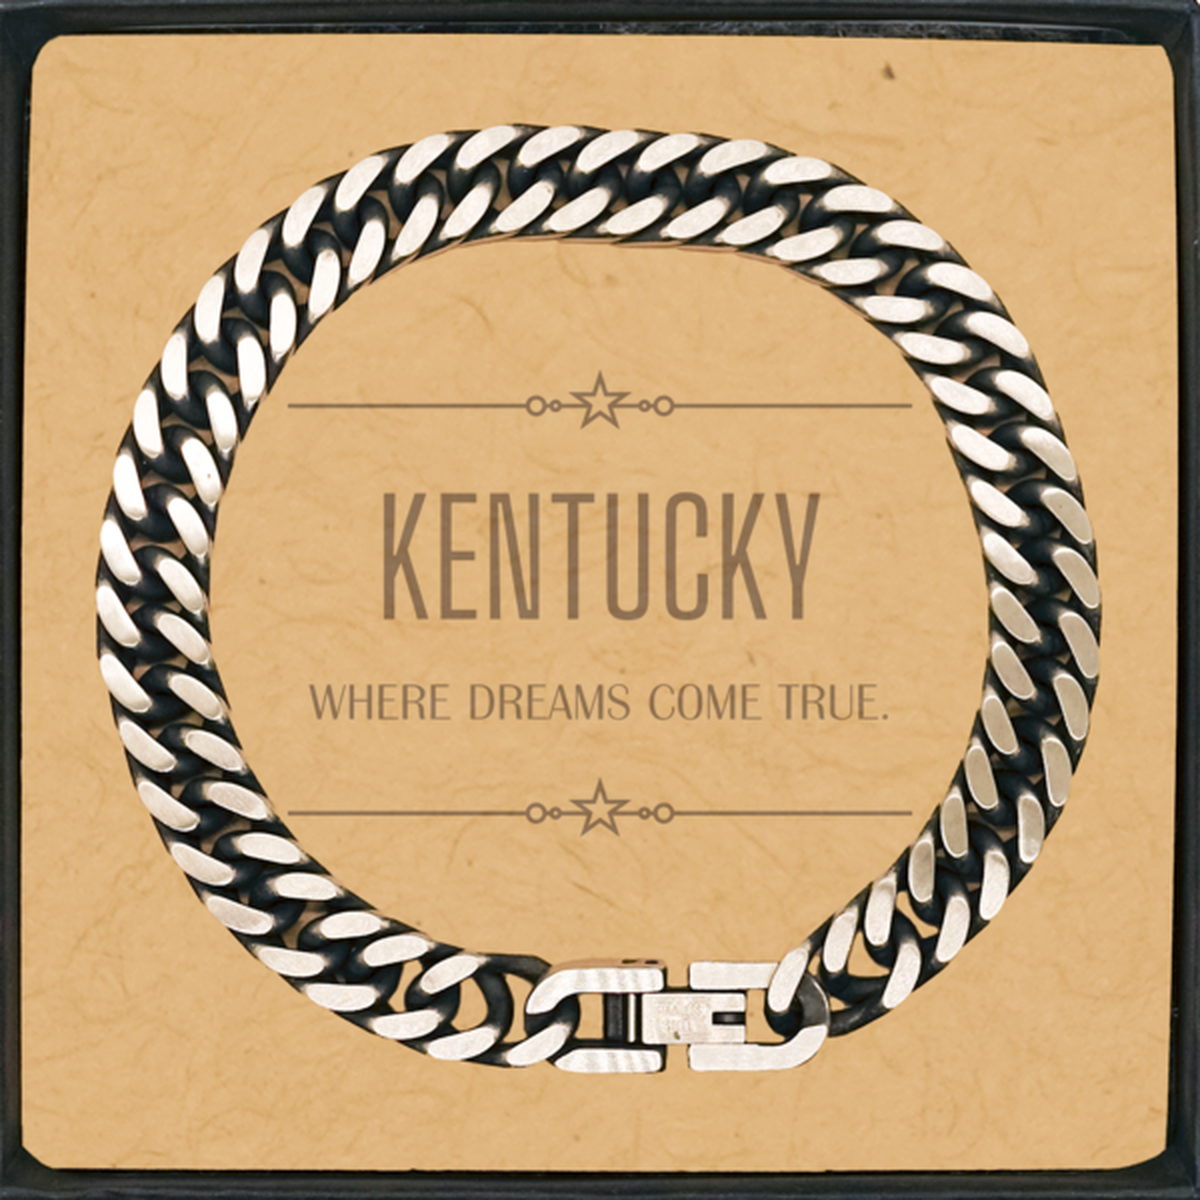 Love Kentucky State Cuban Link Chain Bracelet, Kentucky Where dreams come true, Birthday Inspirational Gifts For Kentucky Men, Women, Friends